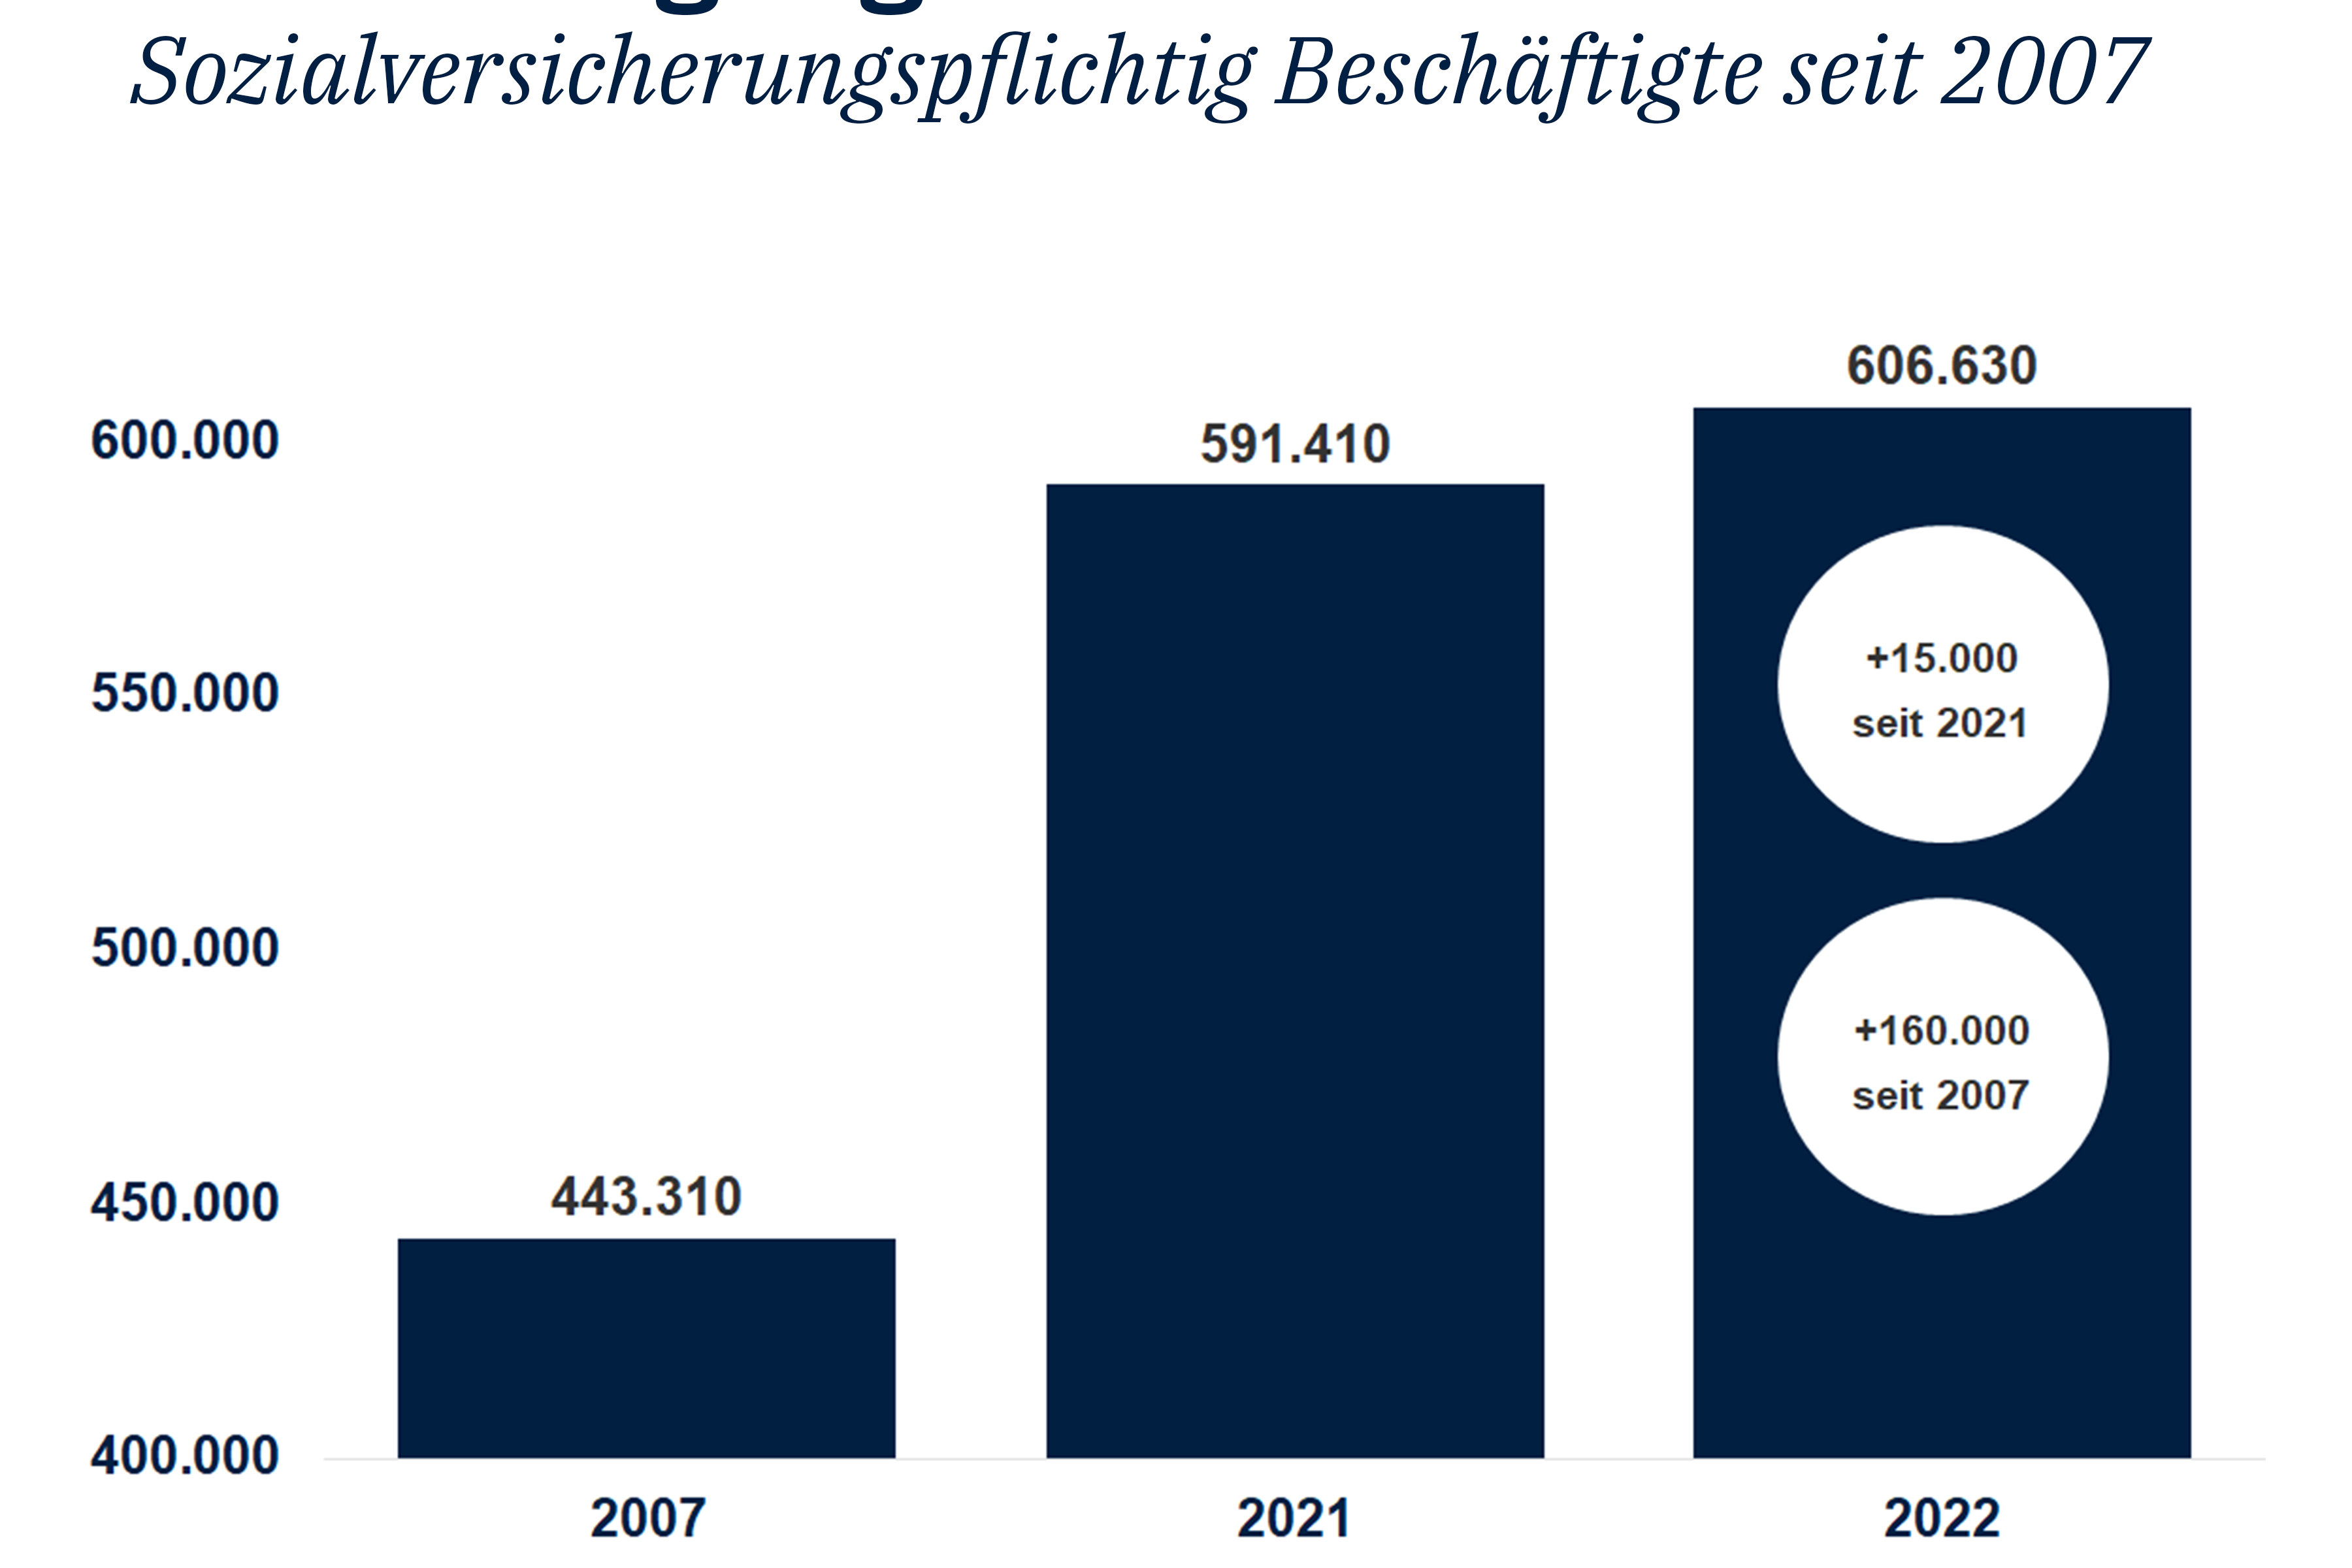 Entwicklung der sozialversicherungspflichtig Beschäftigten in Köln zwischen 2007 und 2022 mit einem Rekord von mehr als 600.000 Beschäftigten in 2022.